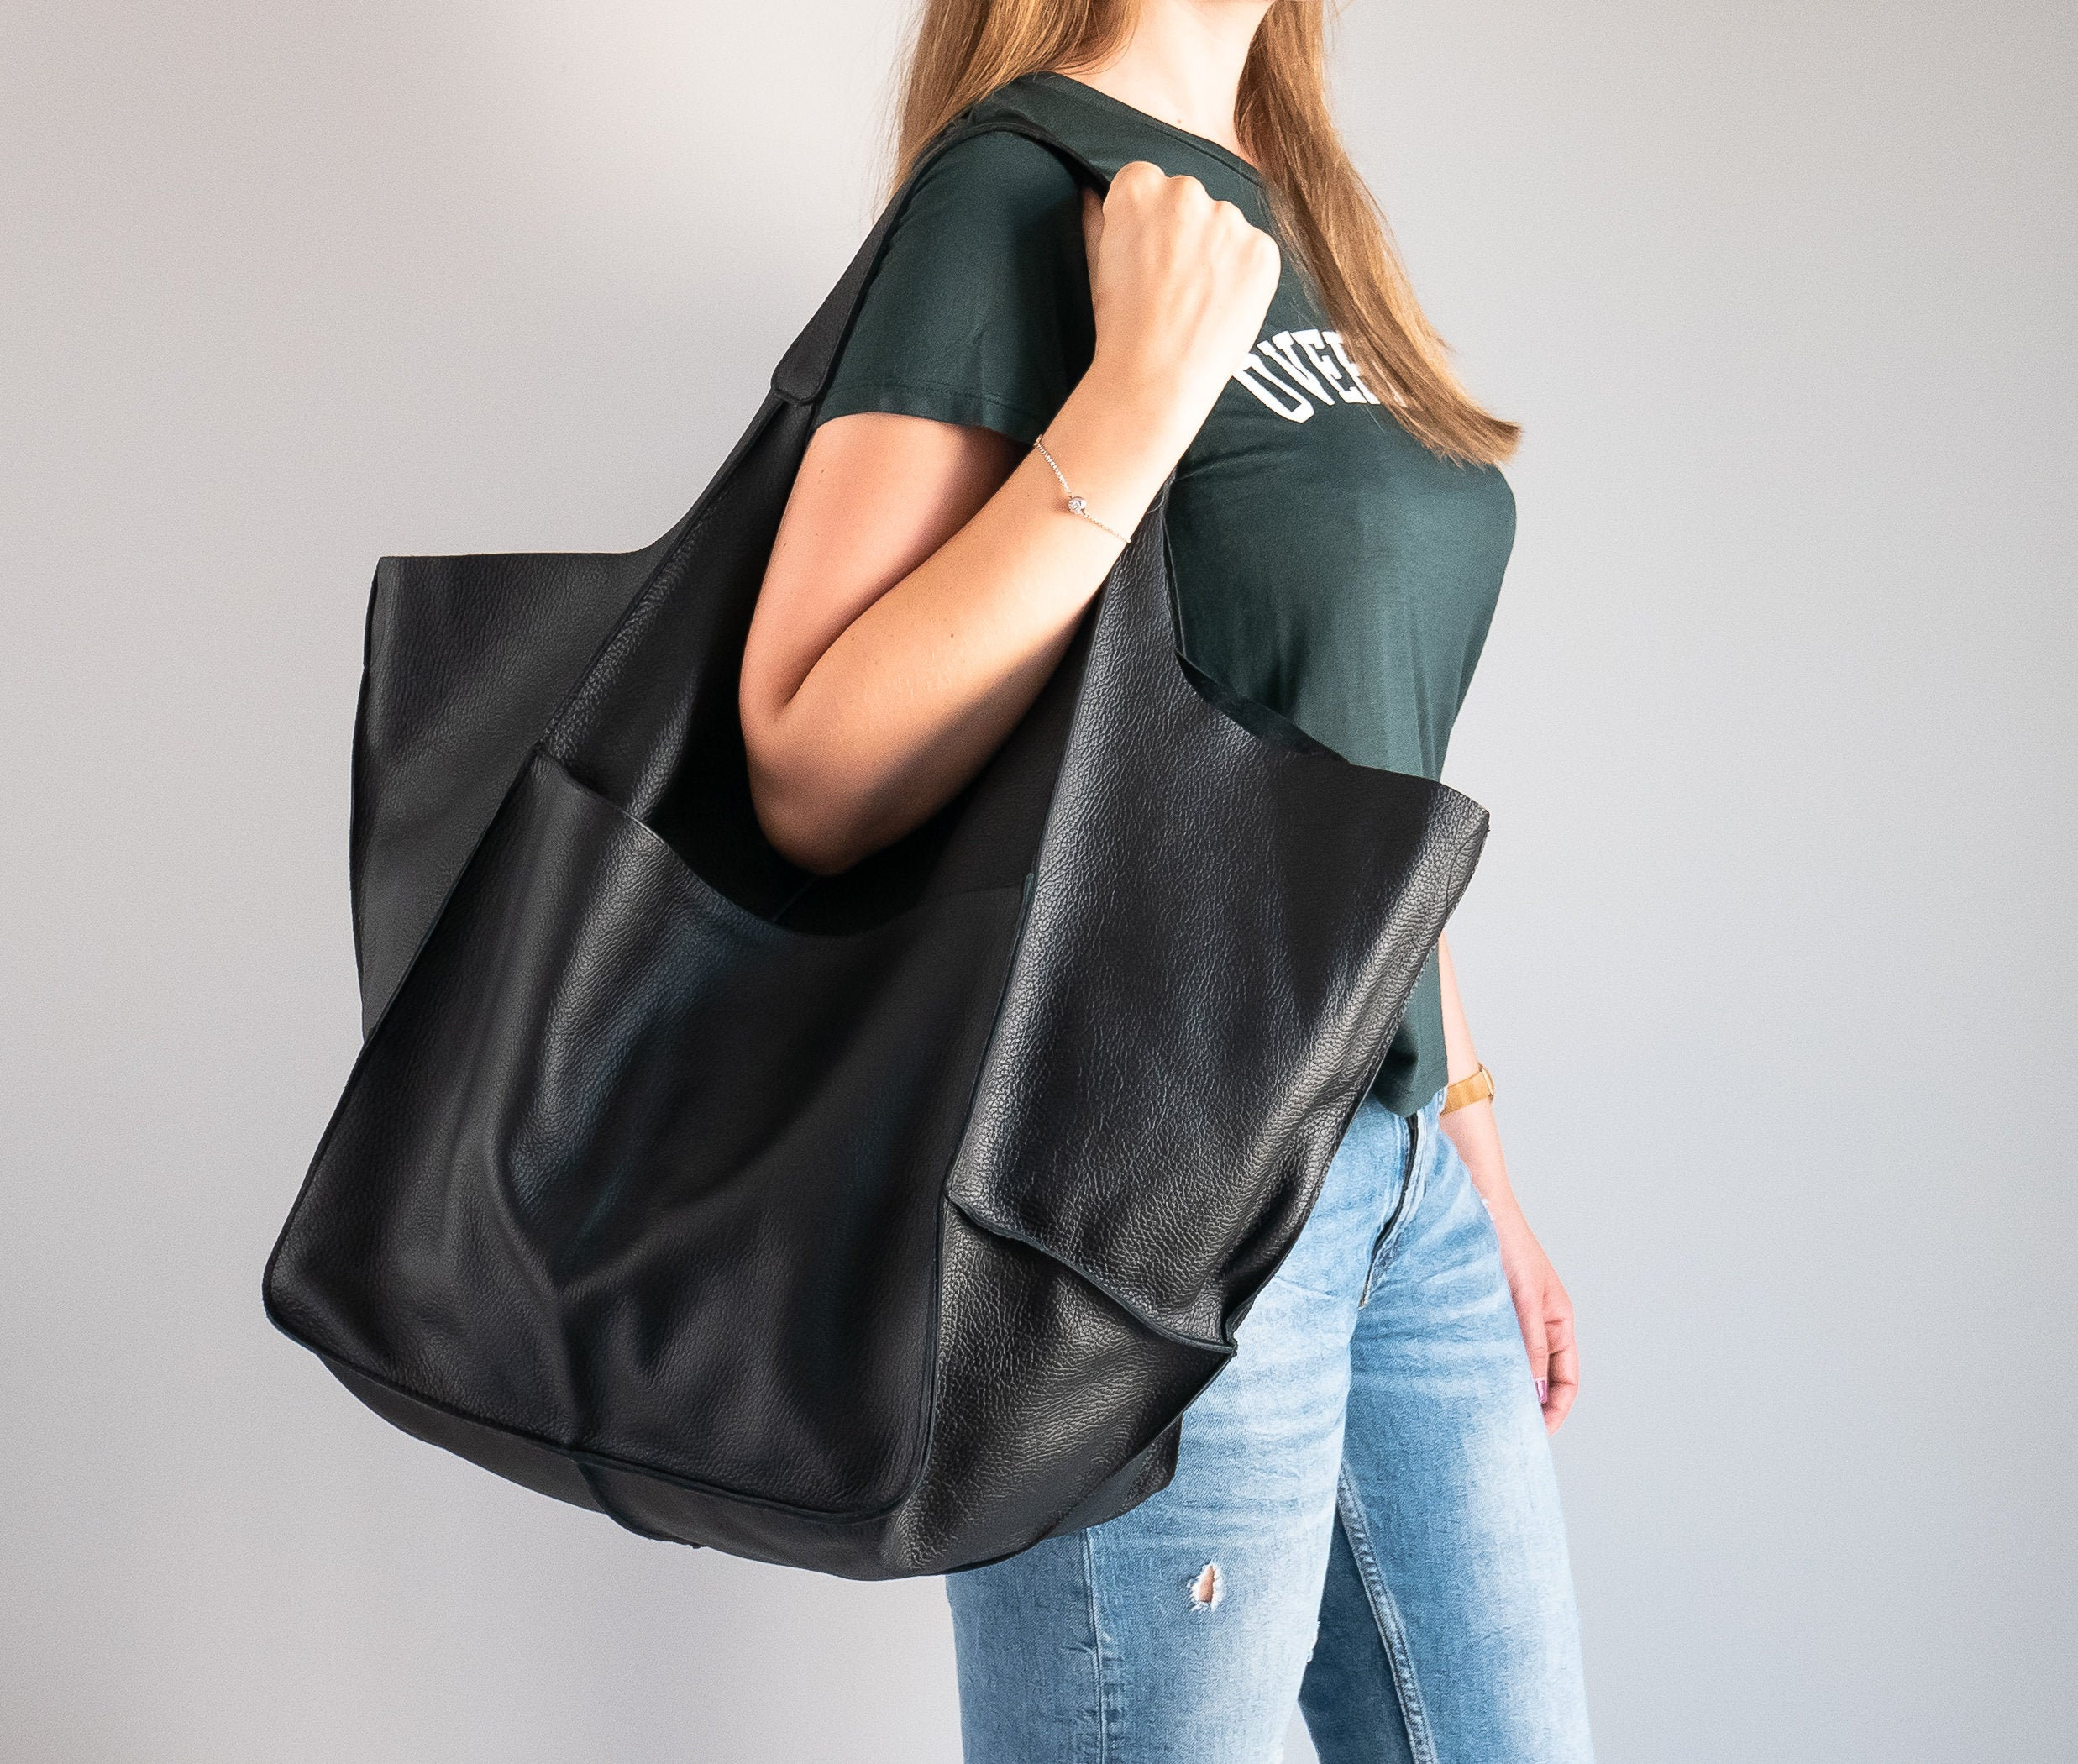 Shoulder Hobo Bag, Oversize Leather Bag, Large Tote, Everyday Slouchy Black Handbag, Women Purse, Big Shoulder Bag Ab